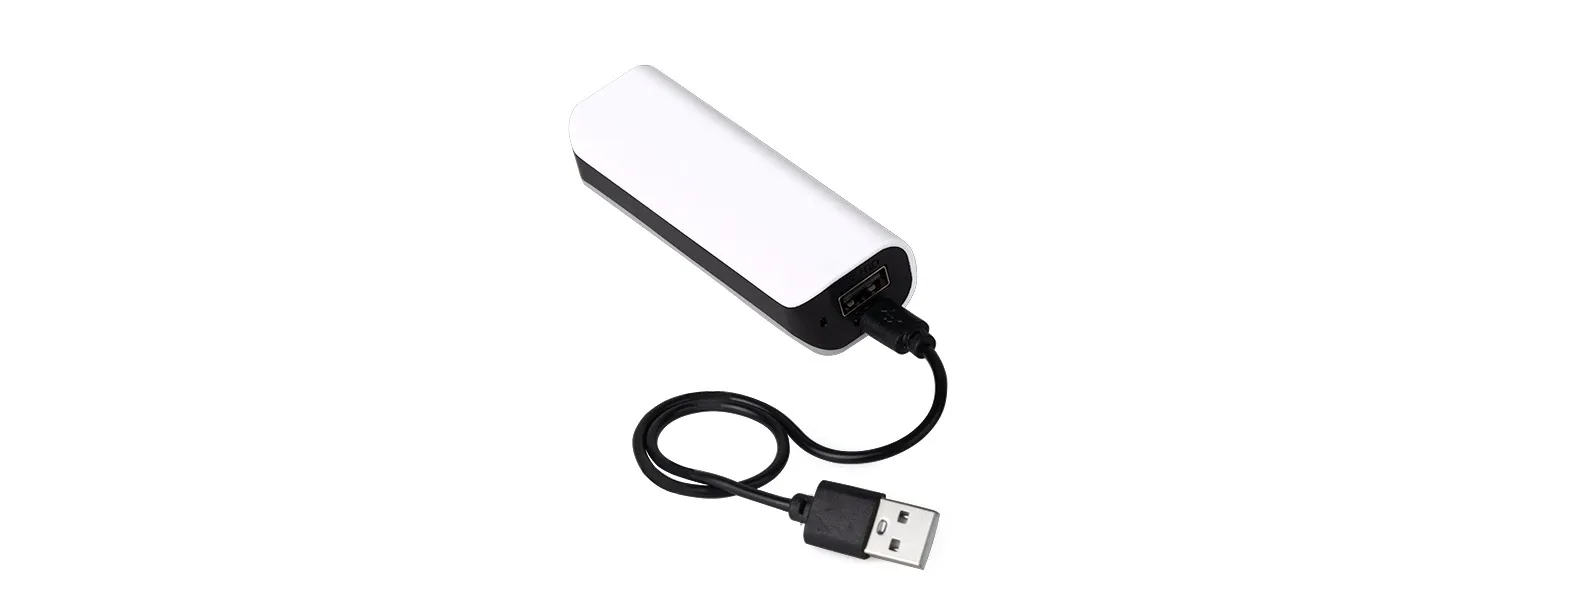 Carregador portátil USB em plástico ABS para celular/smartphone/tablet com capacidade: 1.800mAh. Conta também com caneta esferográfica em ABS preta.